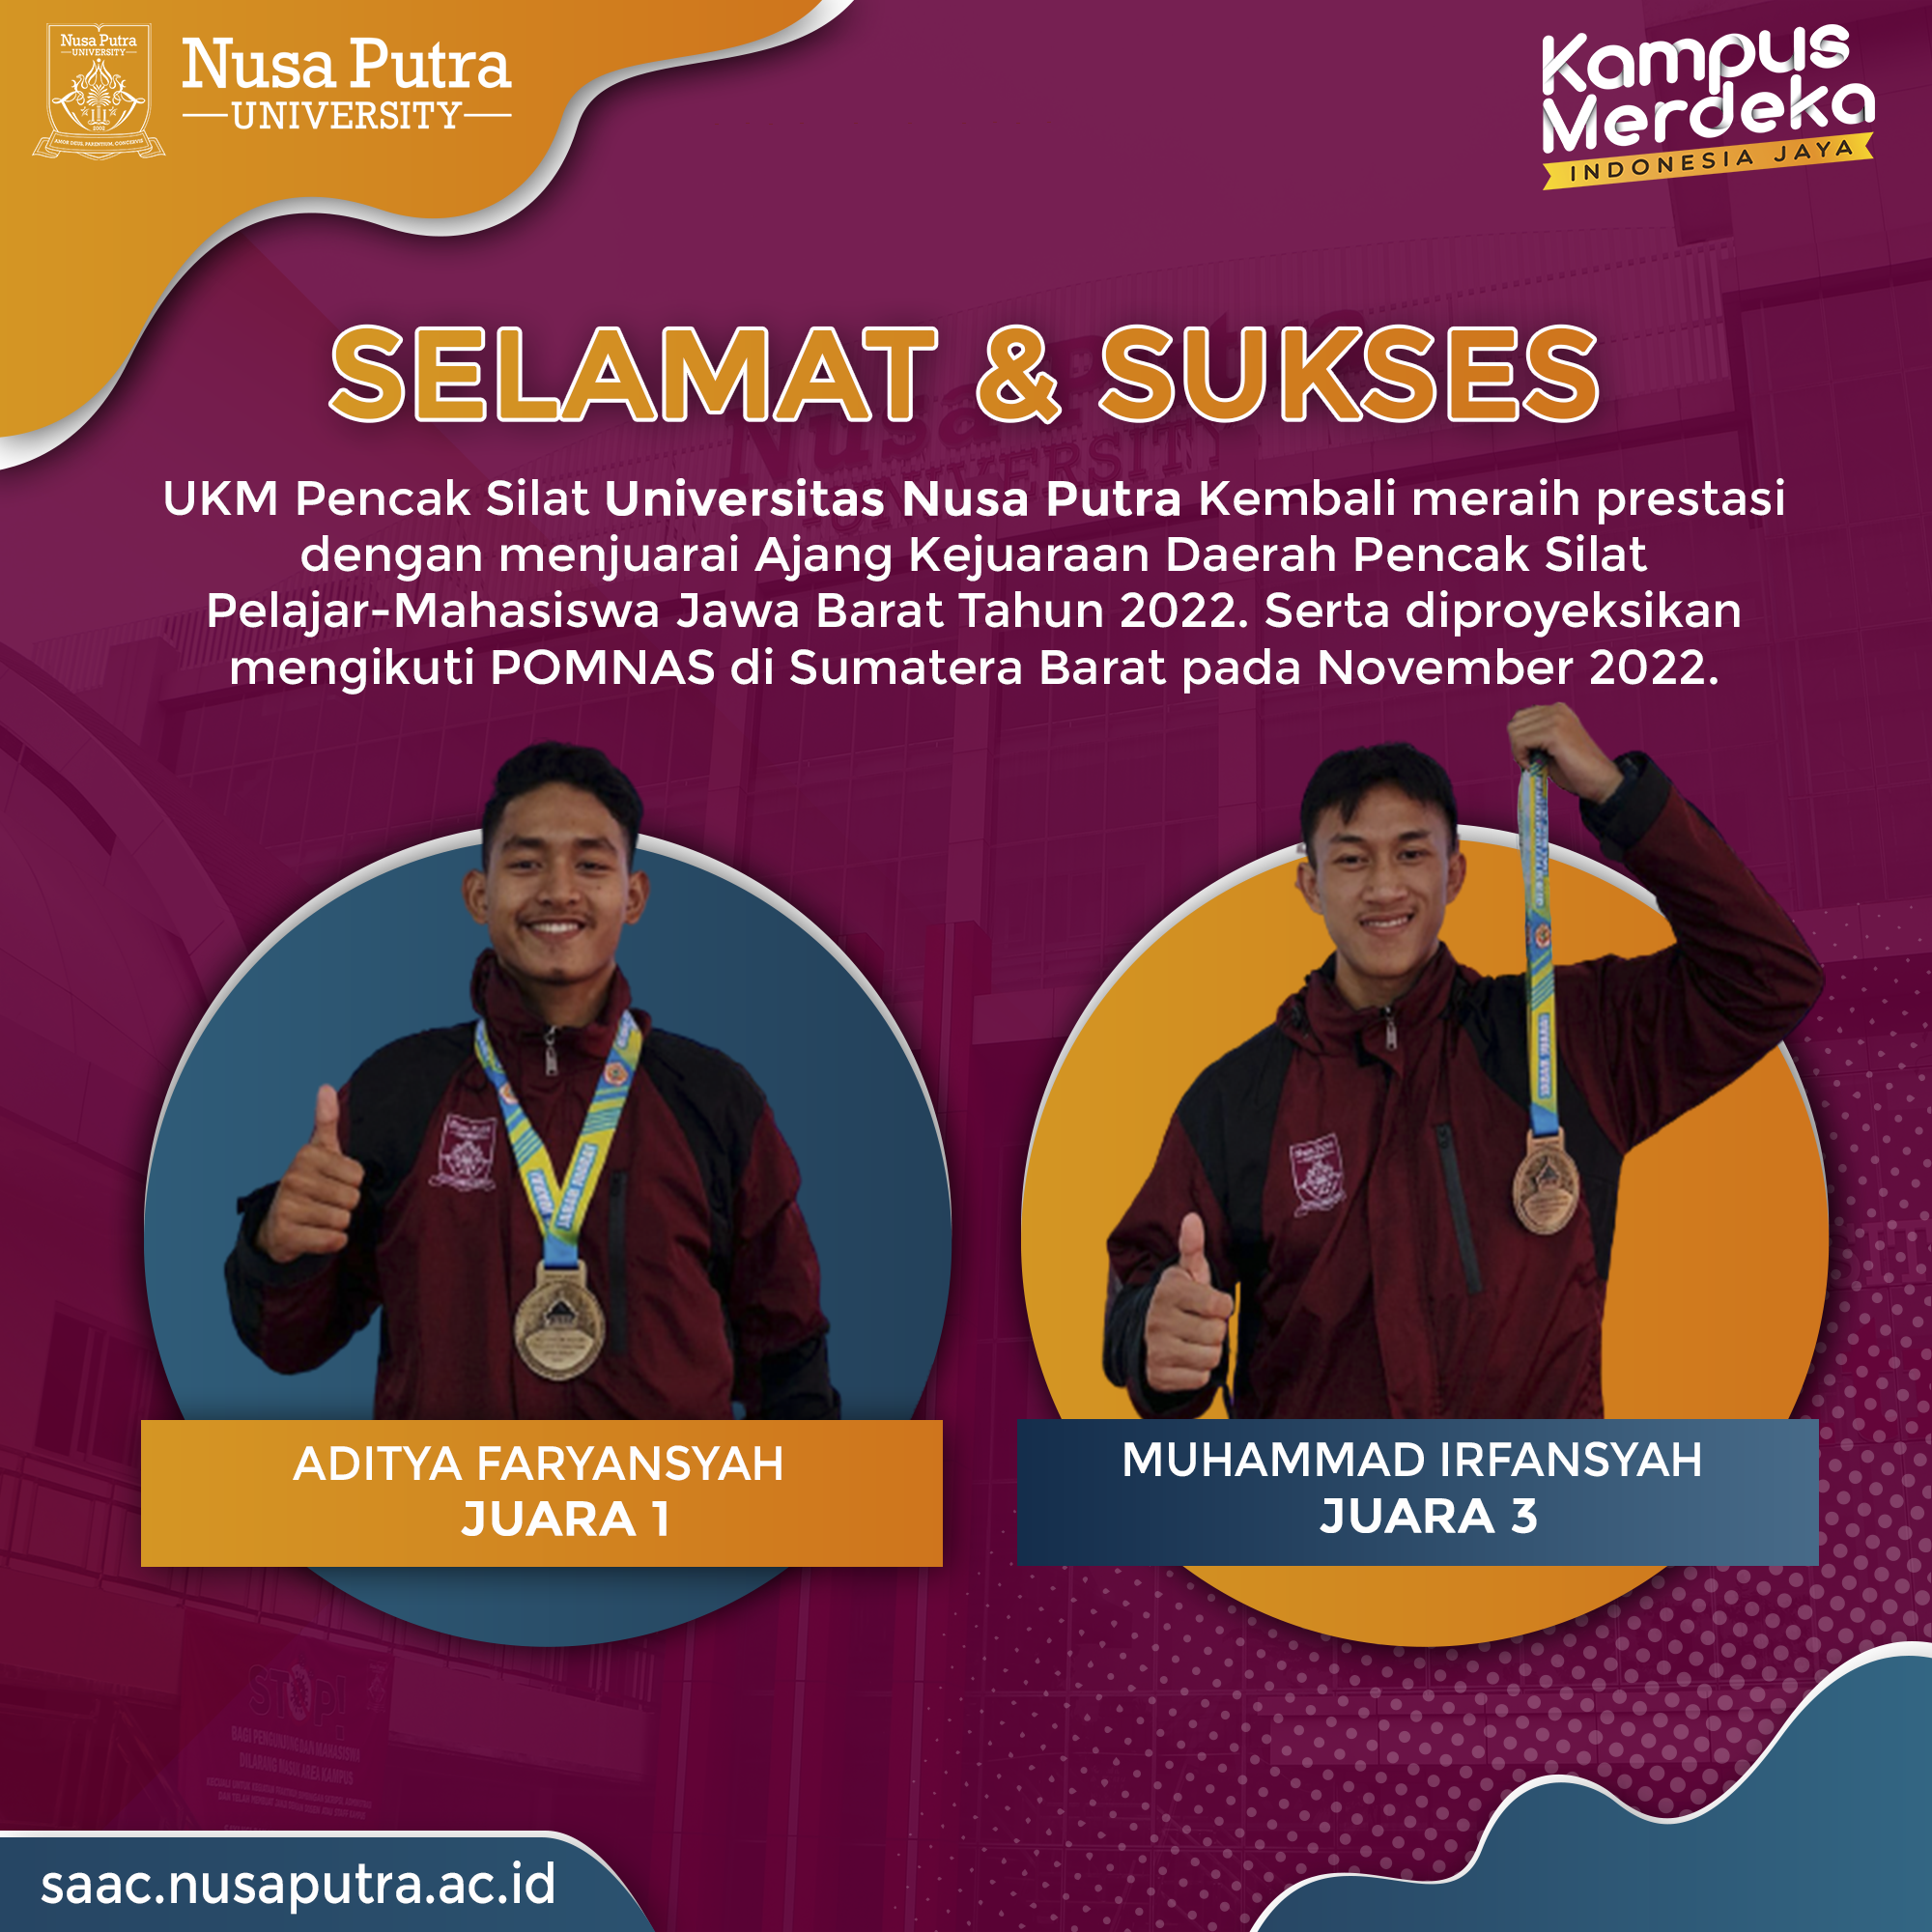 UKM Pencak Silat Universitas Nusa Putra Kembali Meraih Juara Pada Kejurda Pencak Silat Pelajar-Mahasiswa Jawa Barat 2022